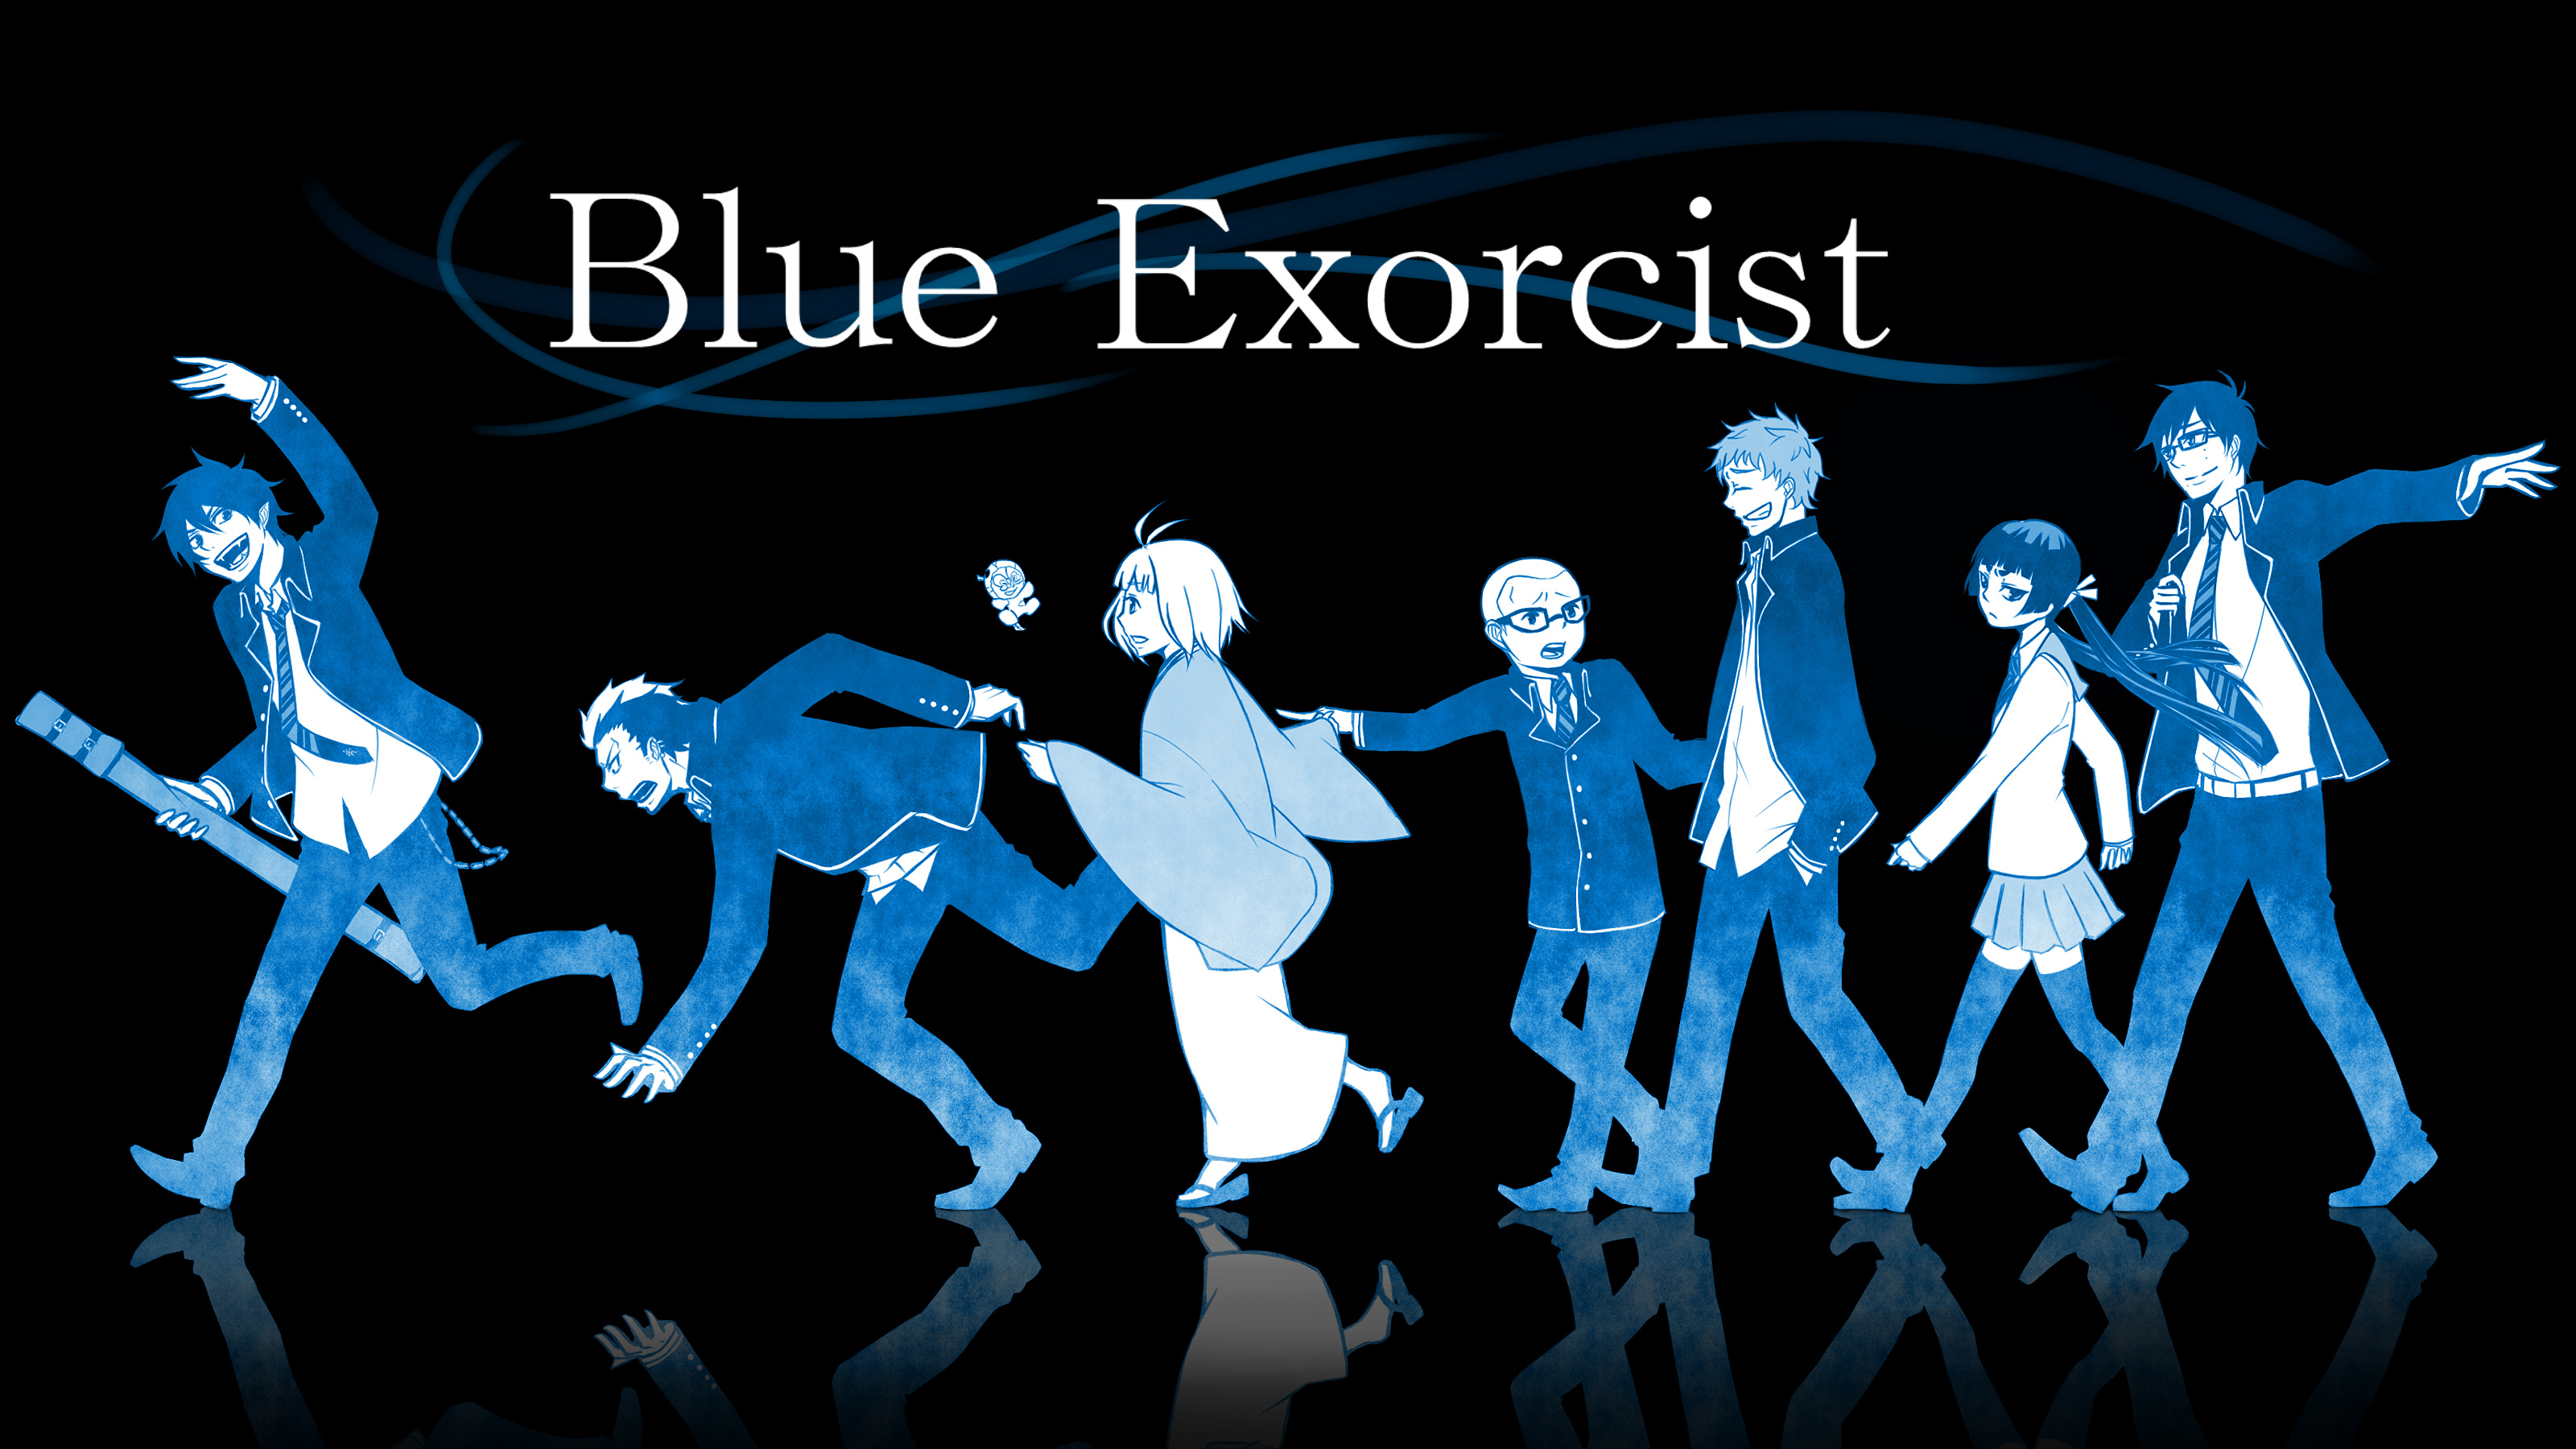 Blue Exorcist, Demon king, Fiery power, Intertwined destinies, 3200x1800 HD Desktop